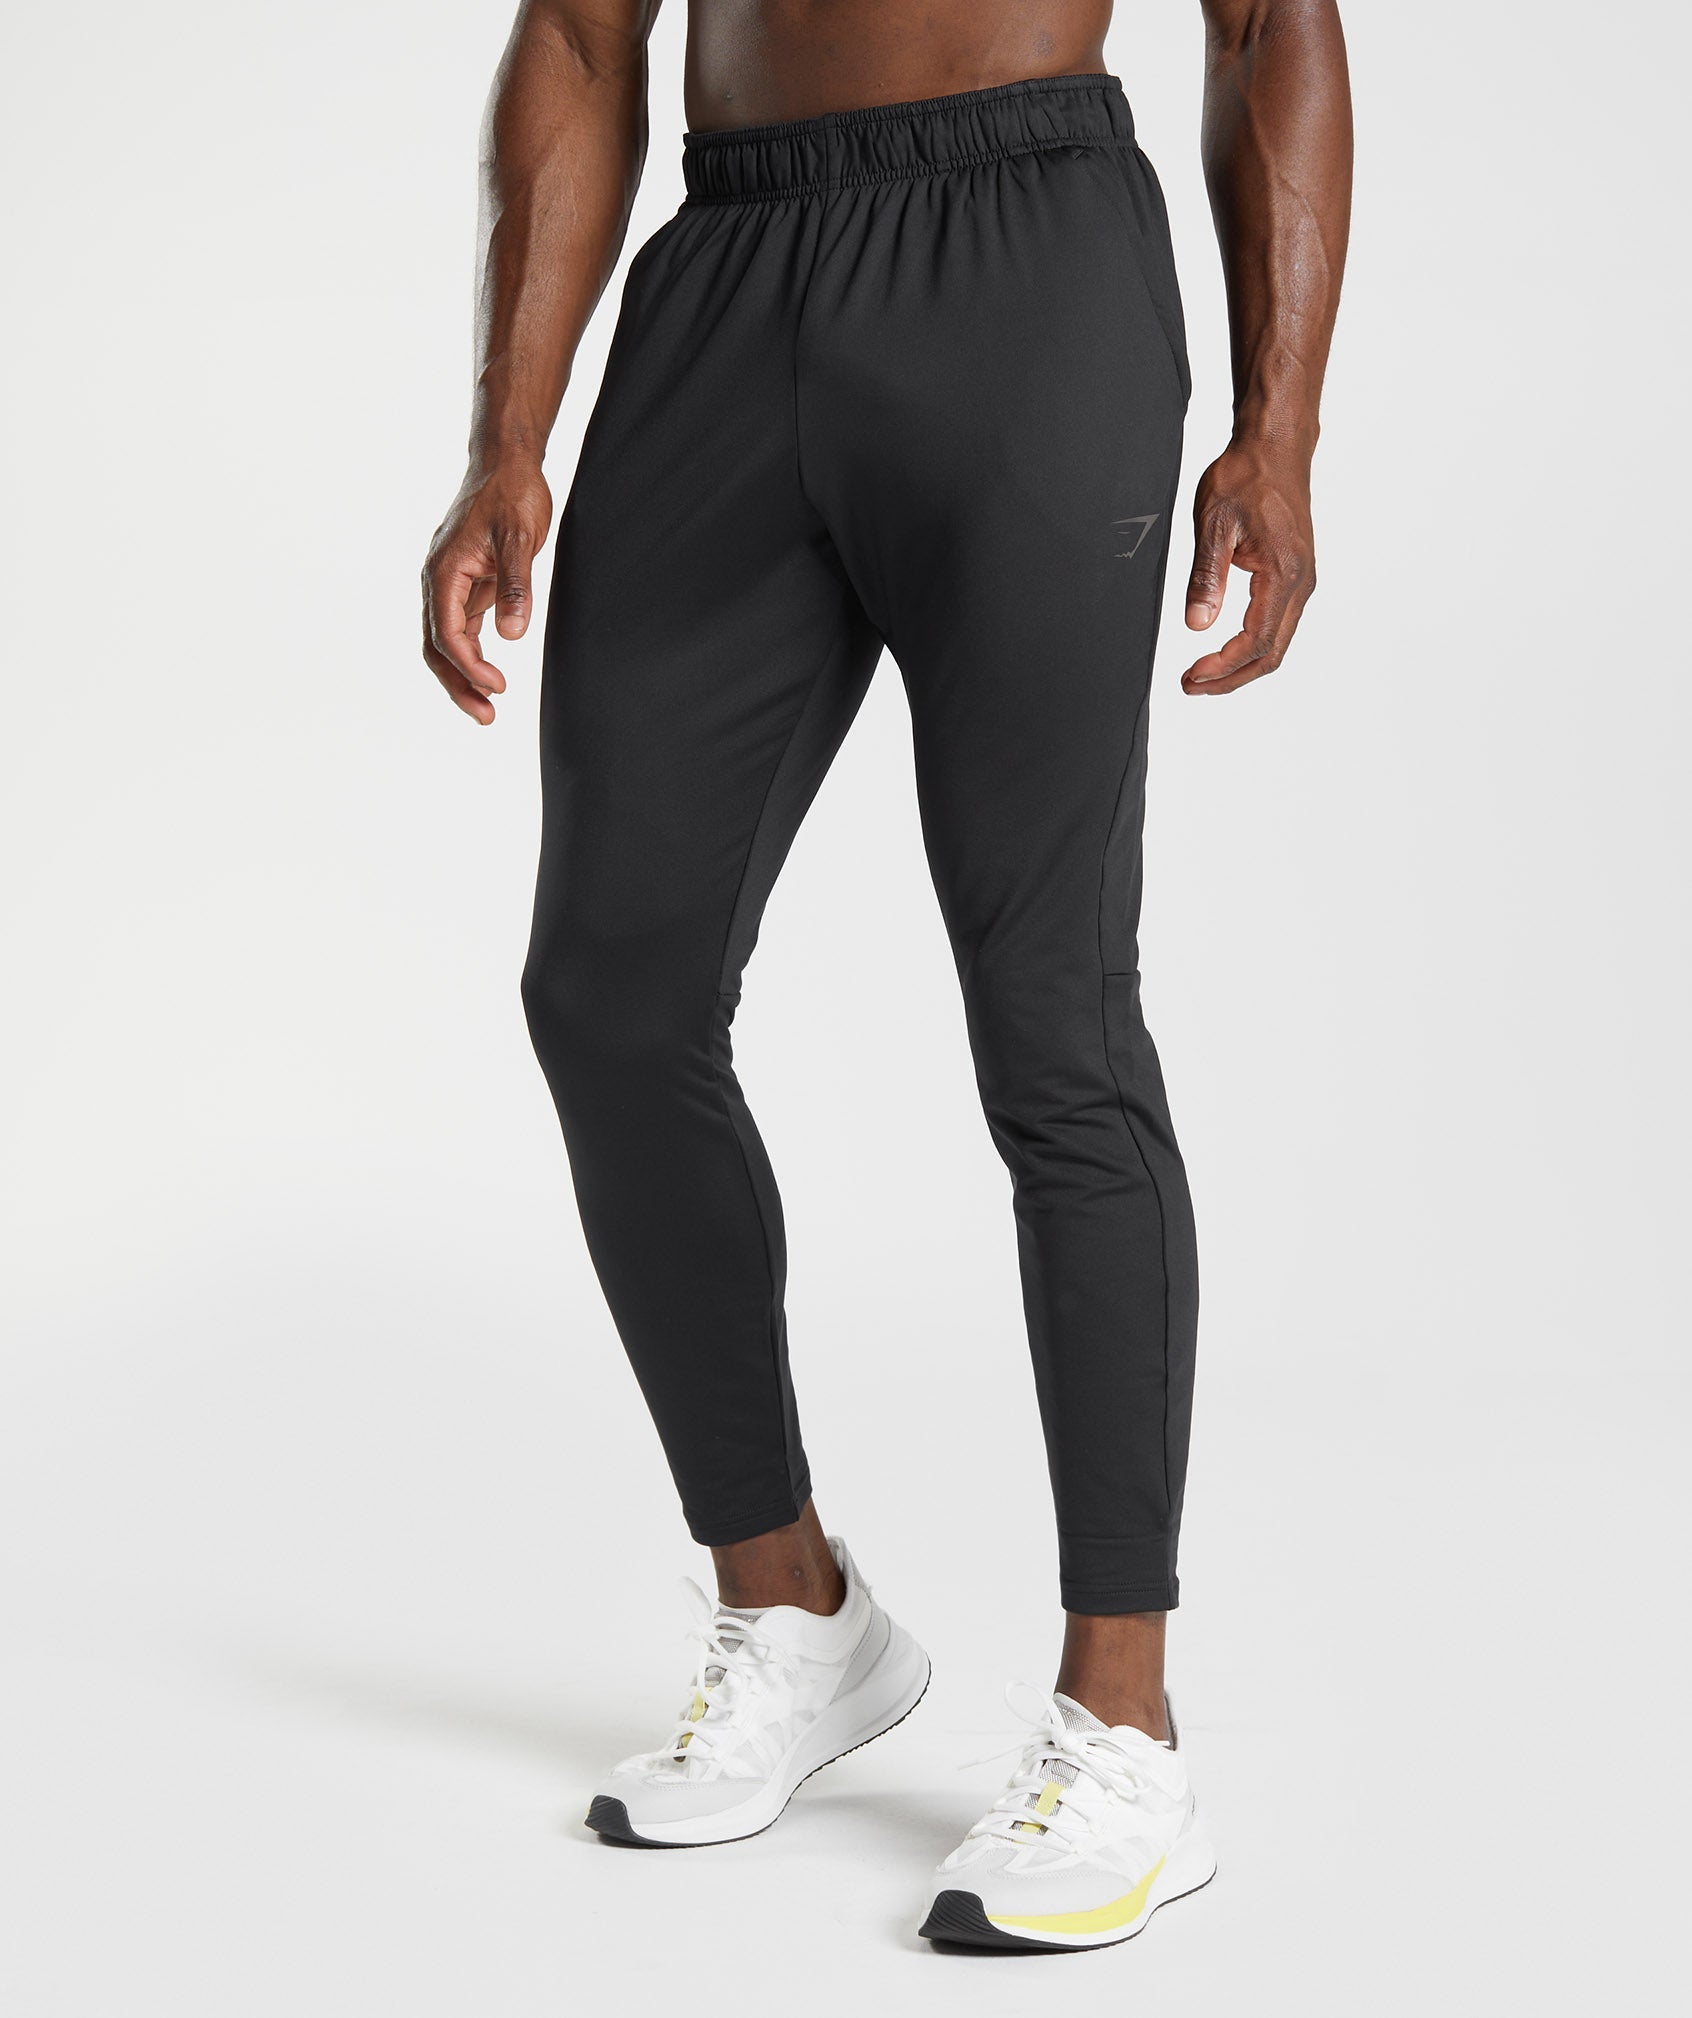 Men's Gym Cotton Fleece Slim Fit Jogging Bottoms - Blue/Black